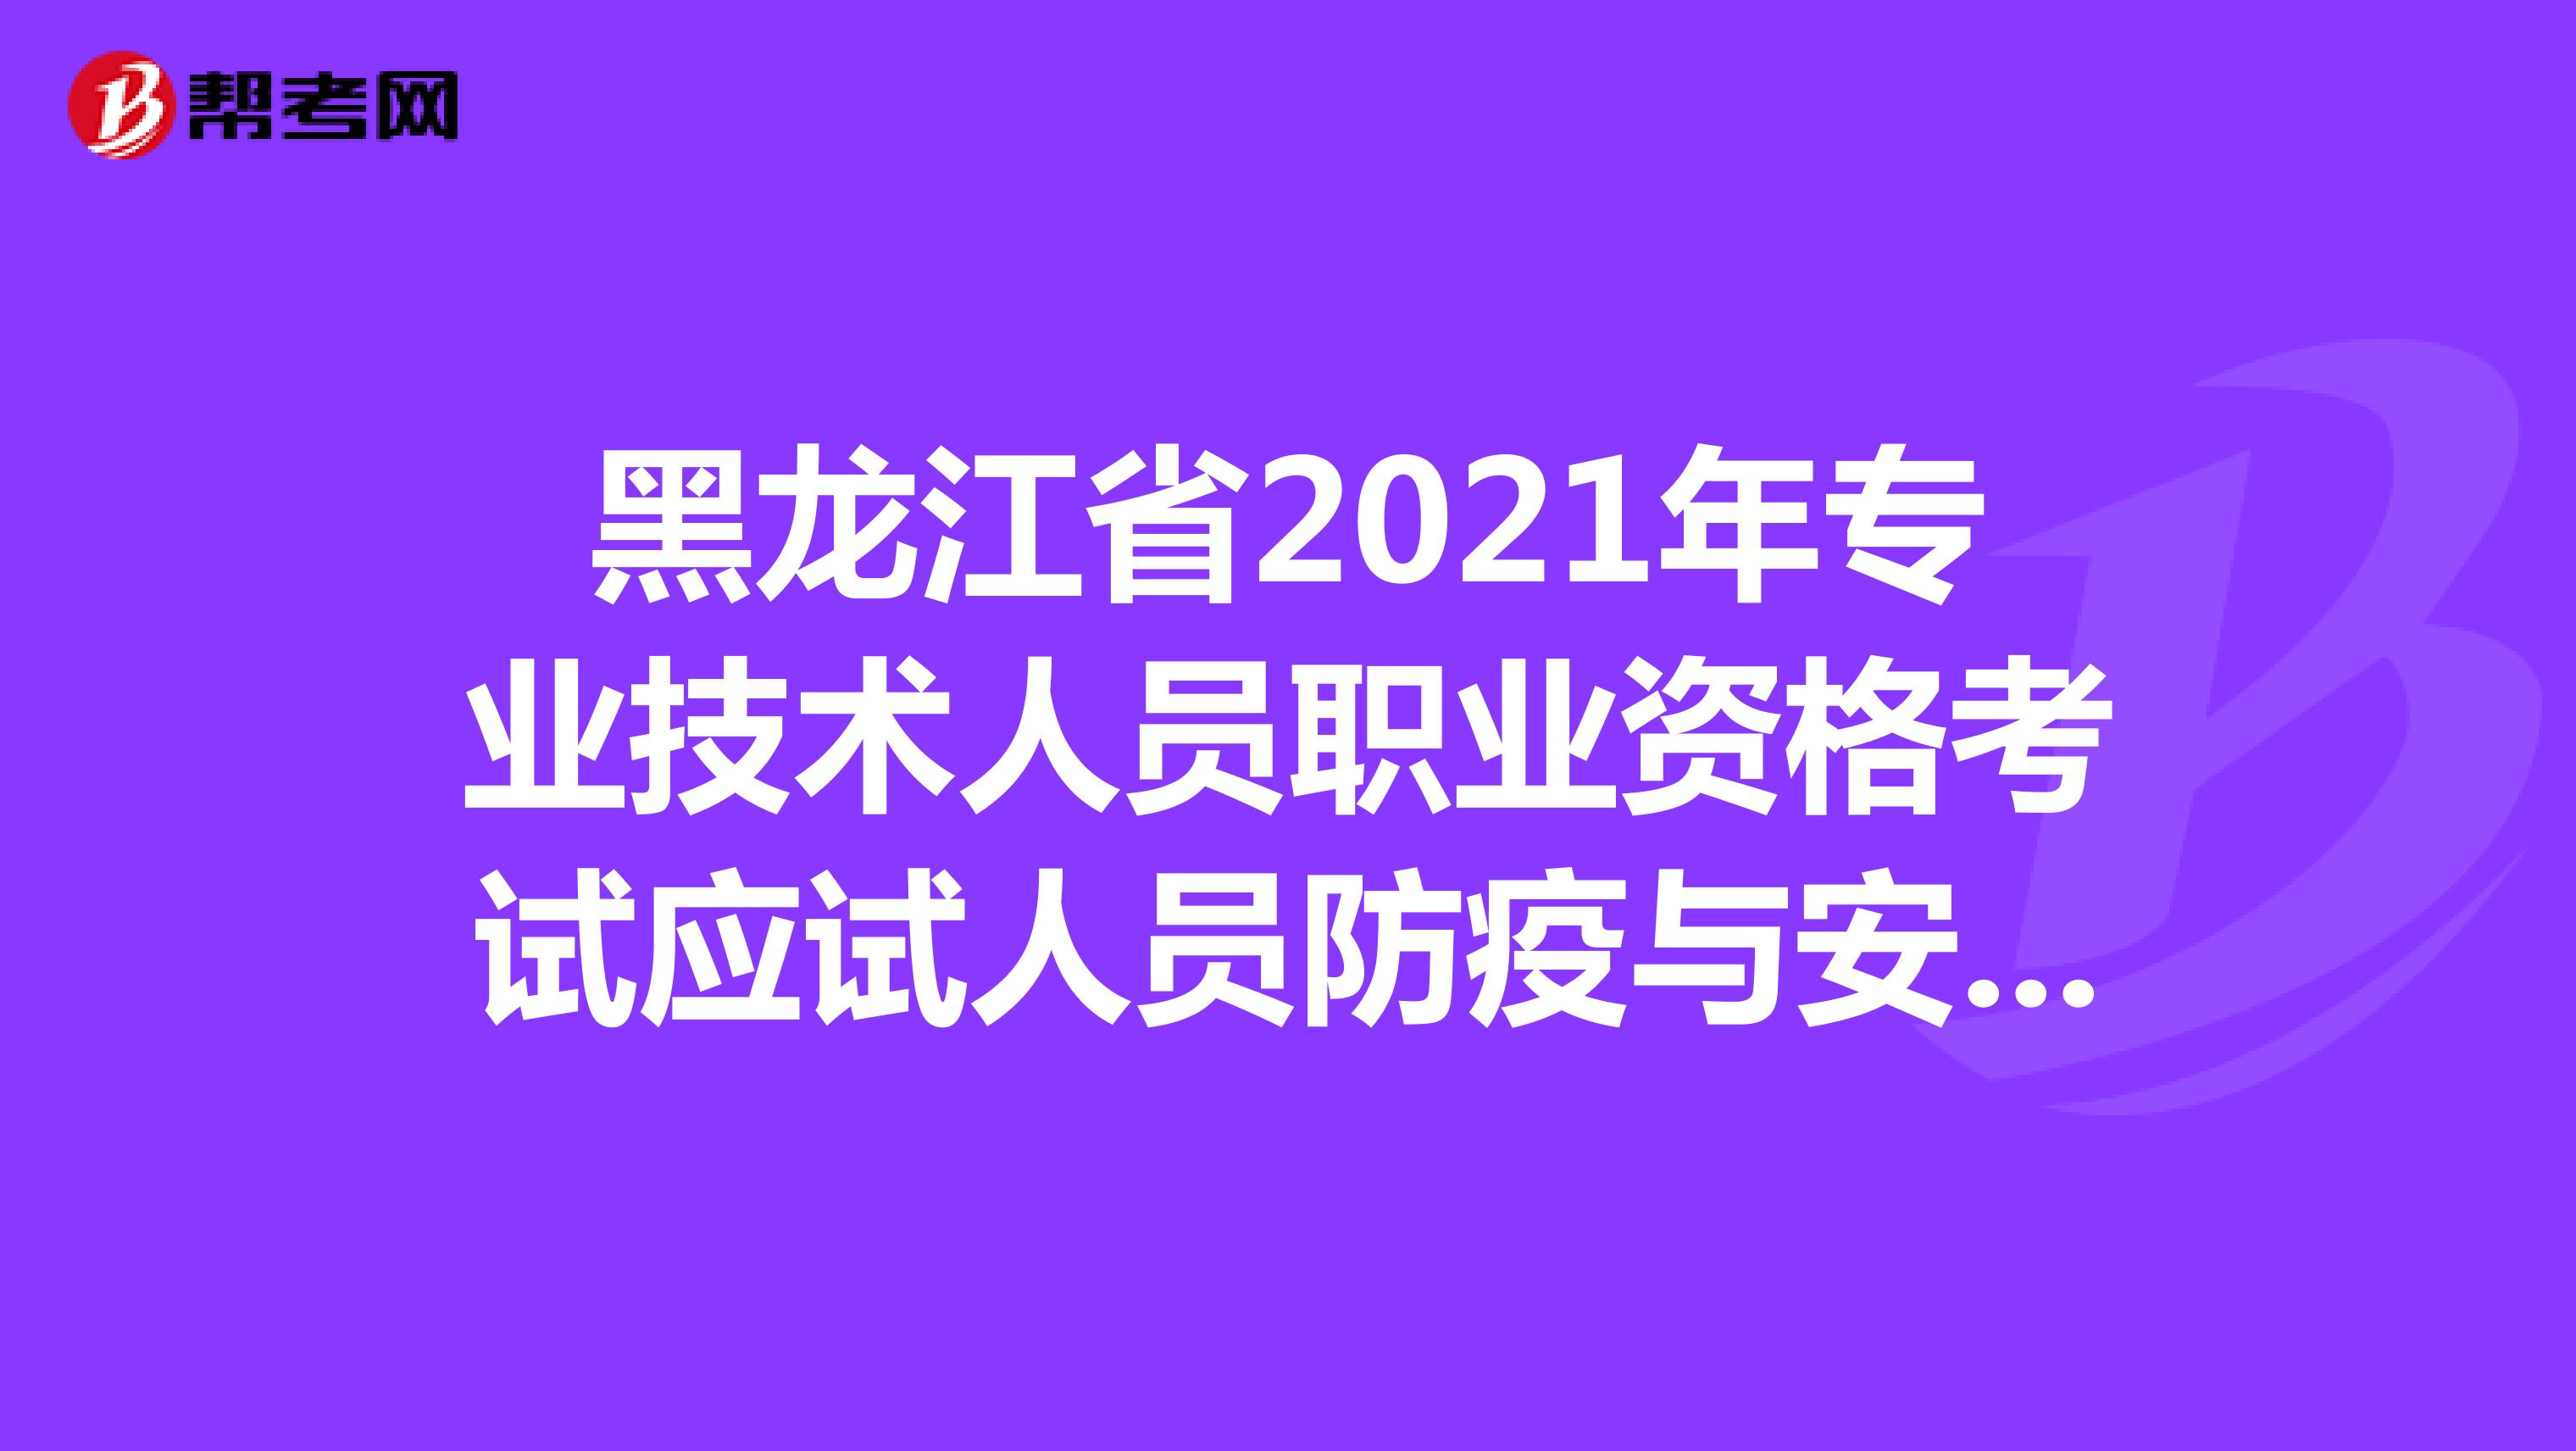 黑龙江省2021年专业技术人员职业资格考试应试人员防疫与安全须知